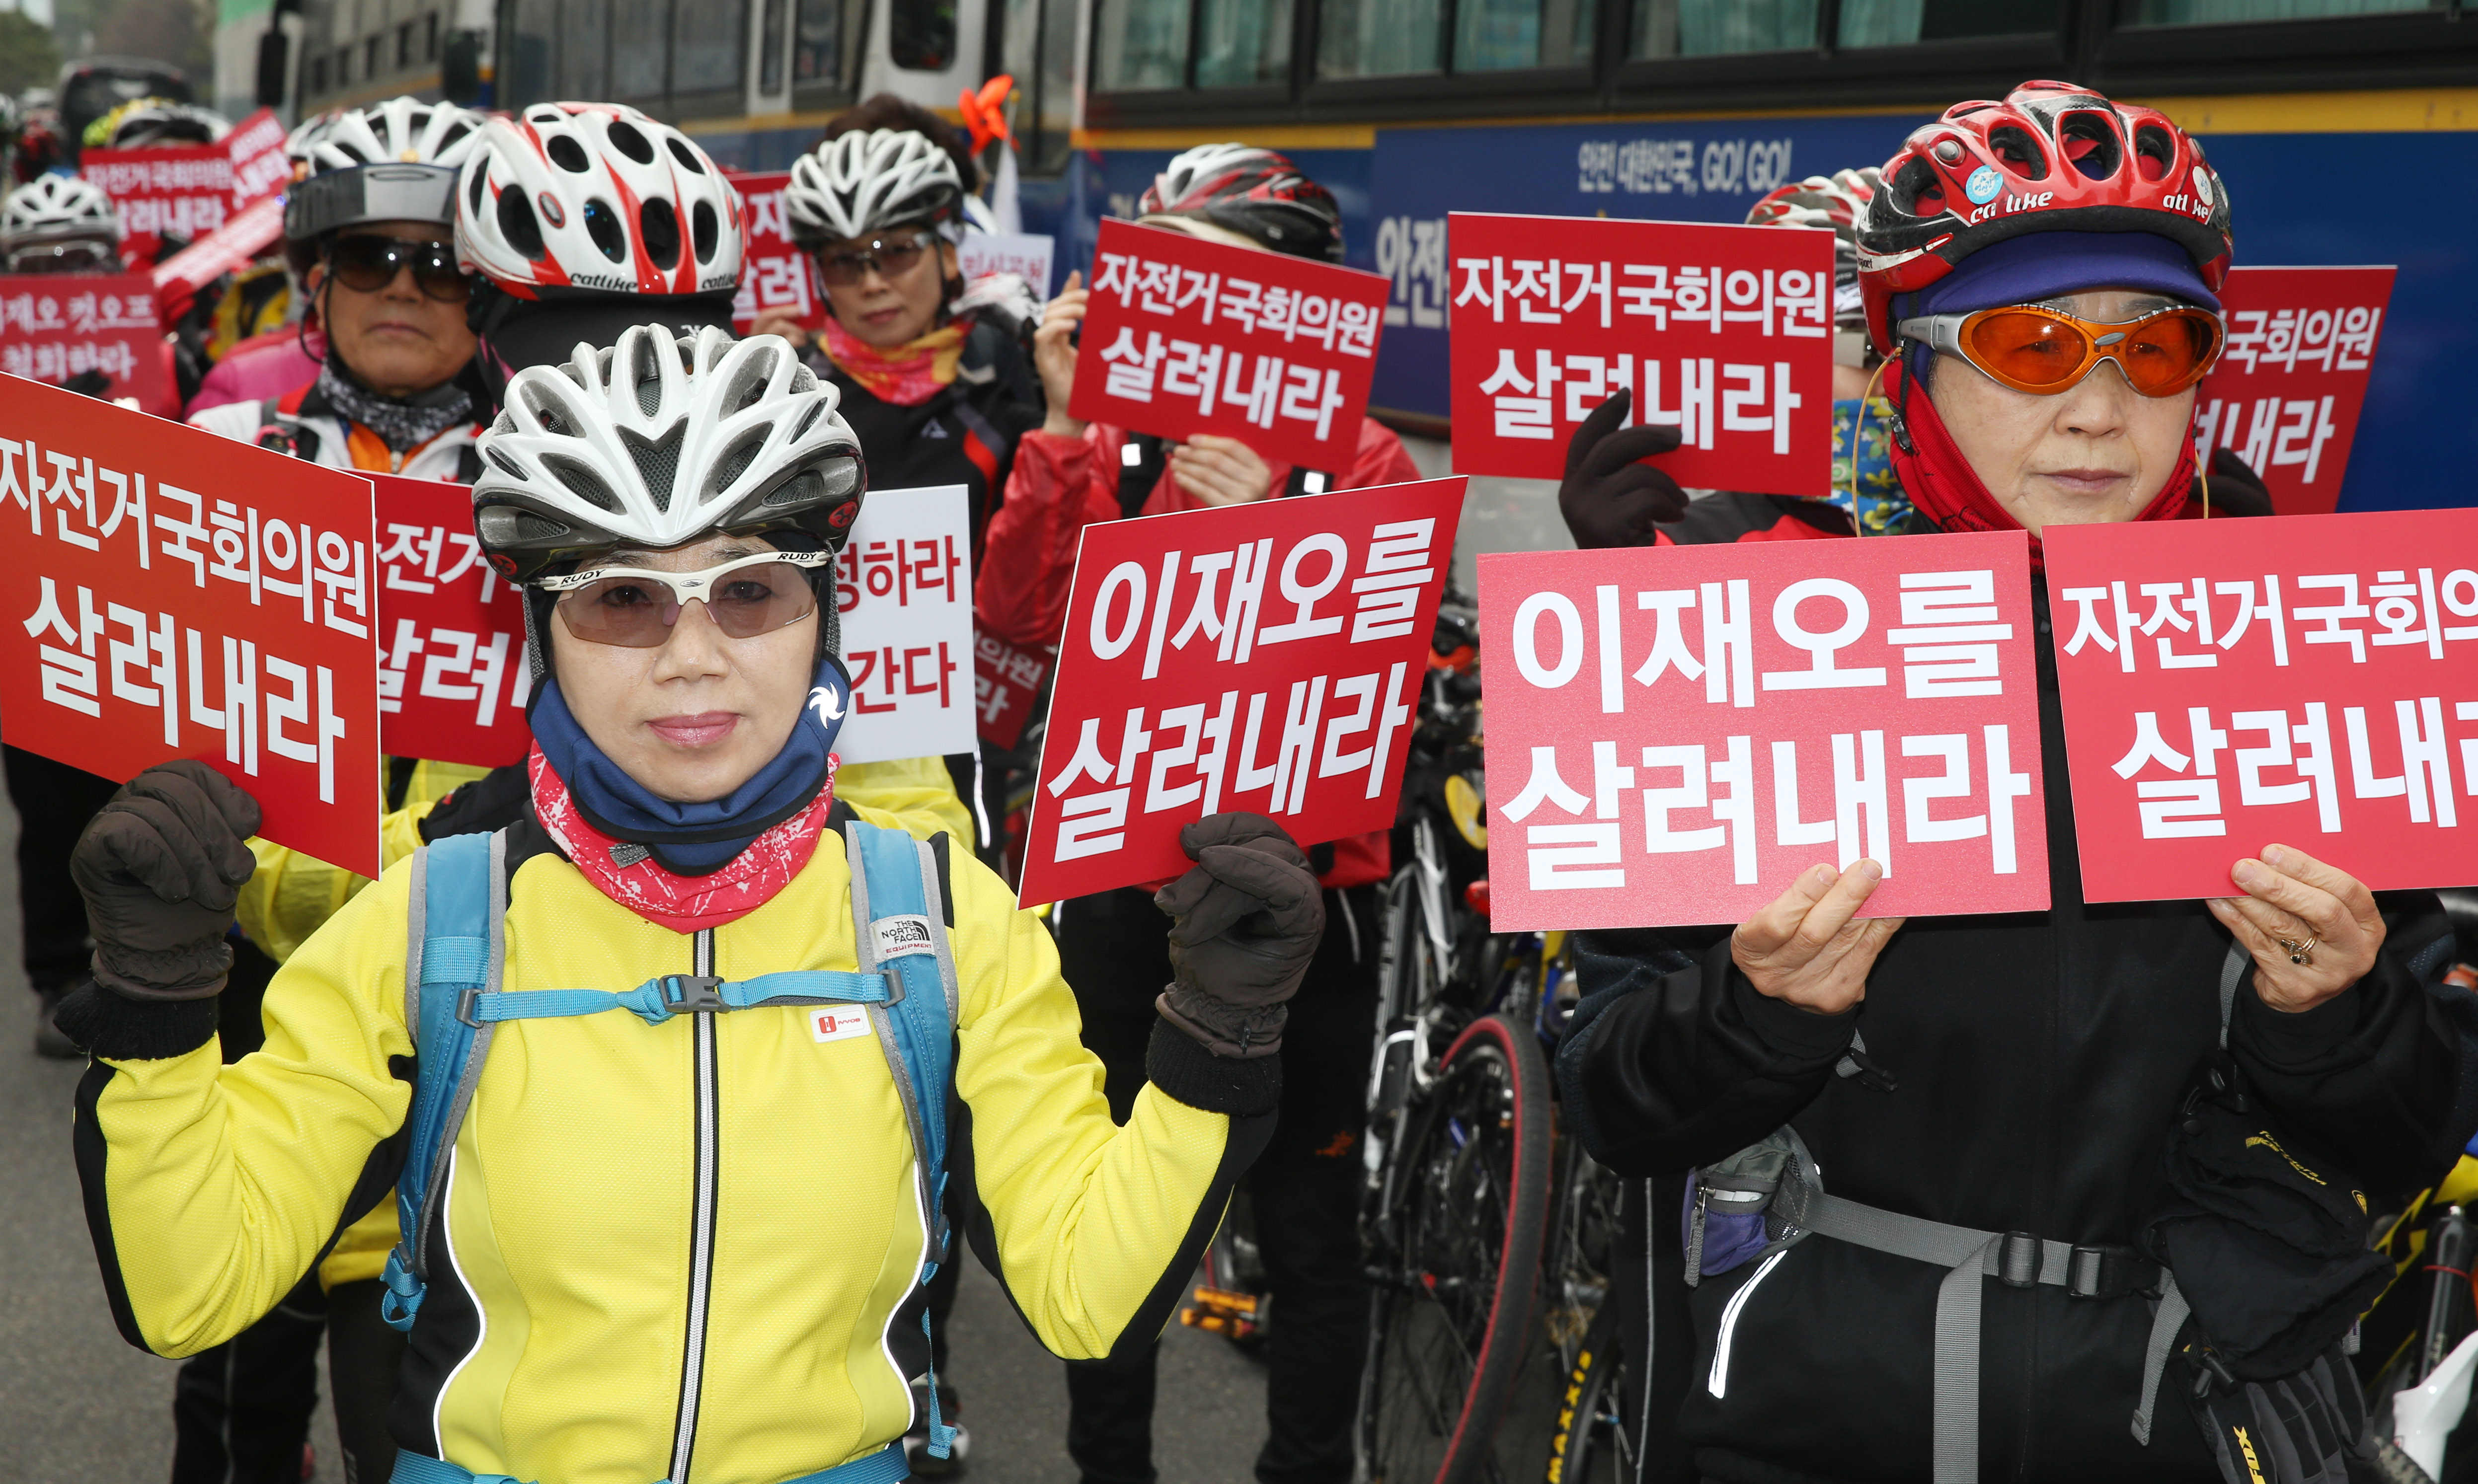 18일 오전 여의도 새누리당 당사 앞에서 이재오 의원의 공천배제에 항의하는 자전거 동호회 회원들이 이 의원의 공천을 촉구하는 시위를 벌이고 있다.